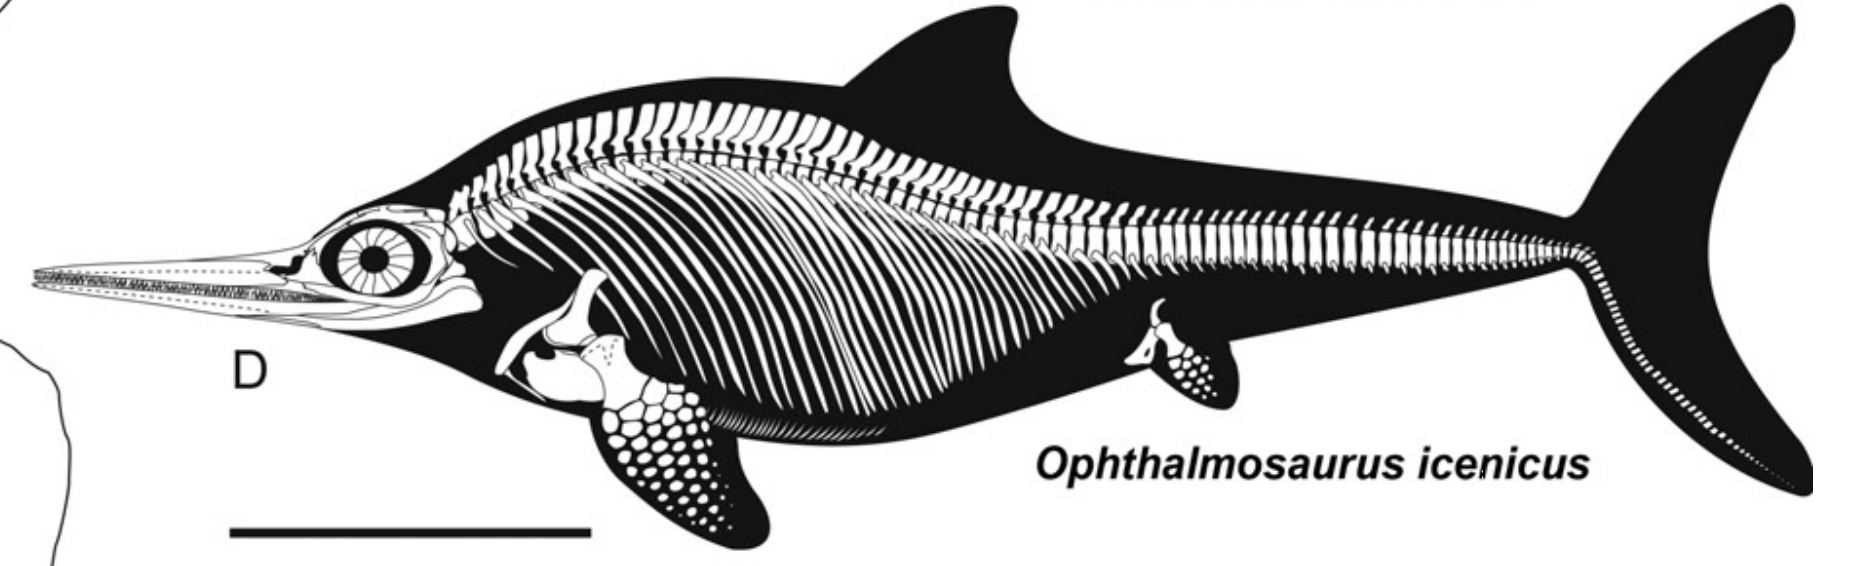 科技 自然 结合鱼龙和海豚科的演化谈谈嘬鱿鱼 大眼鱼龙类在食性和